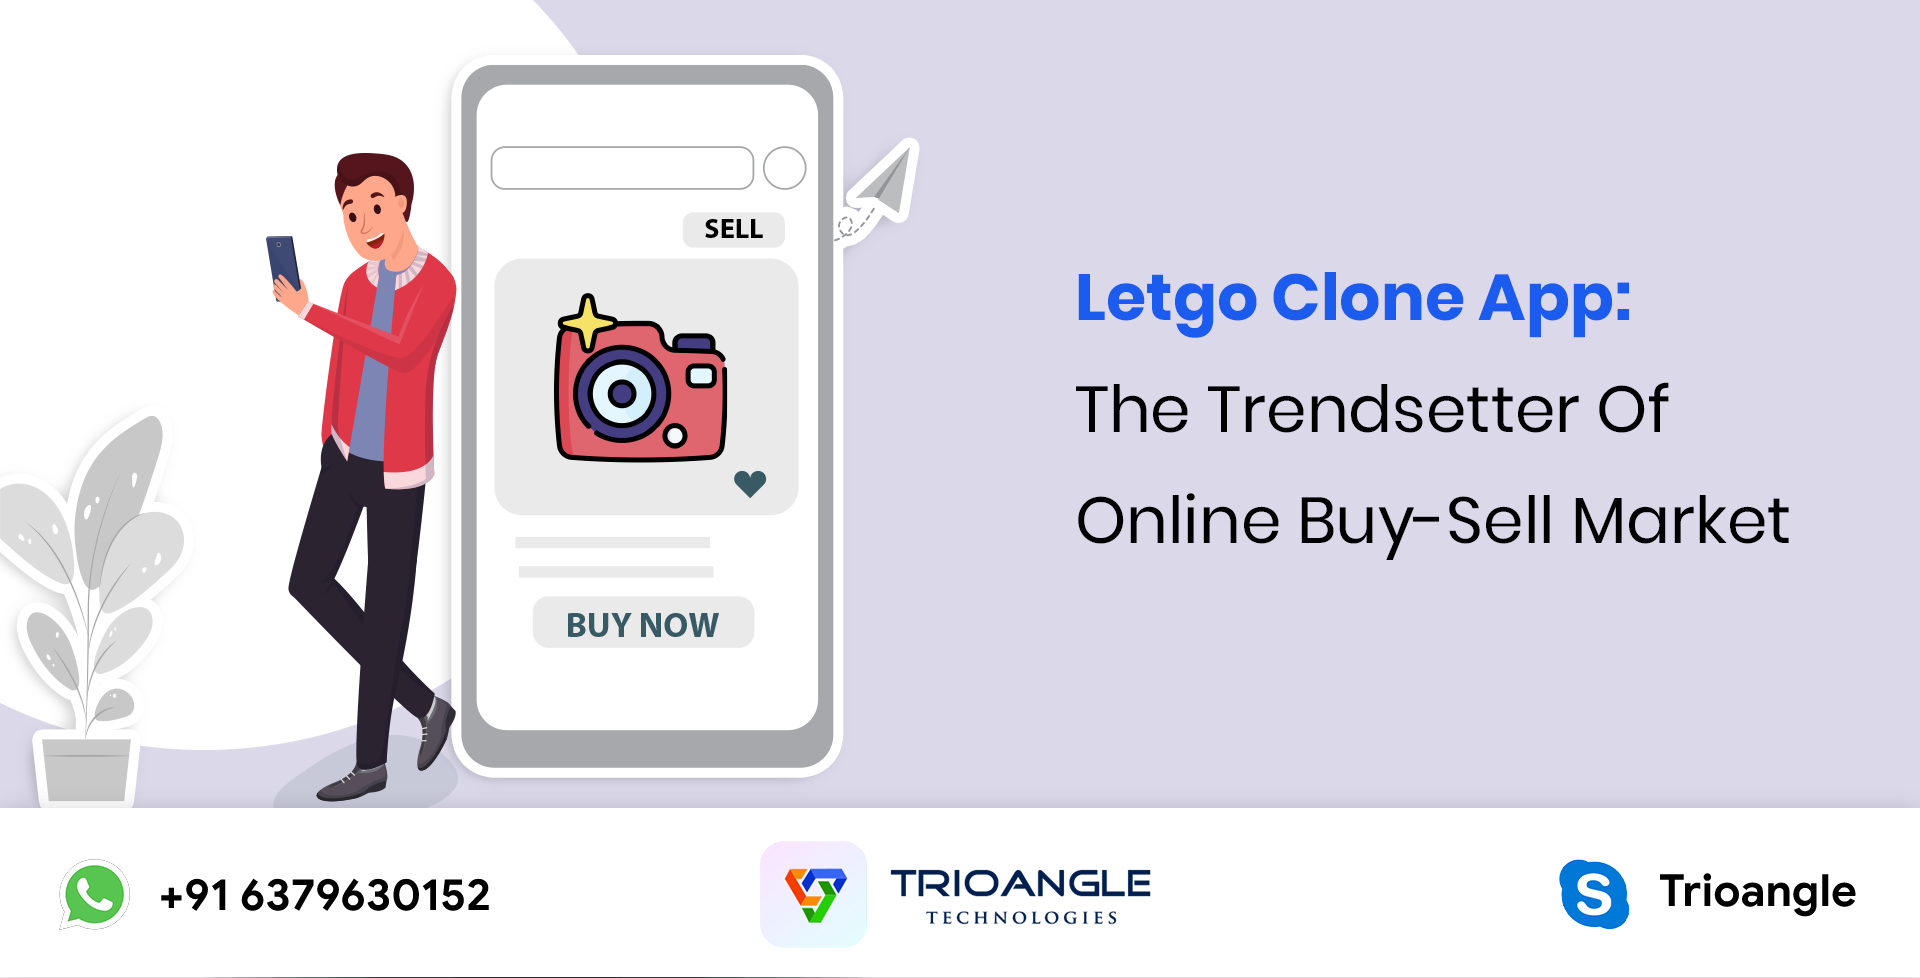 Letgo Clone App: The Trendsetter Of Online Buy-Sell Market